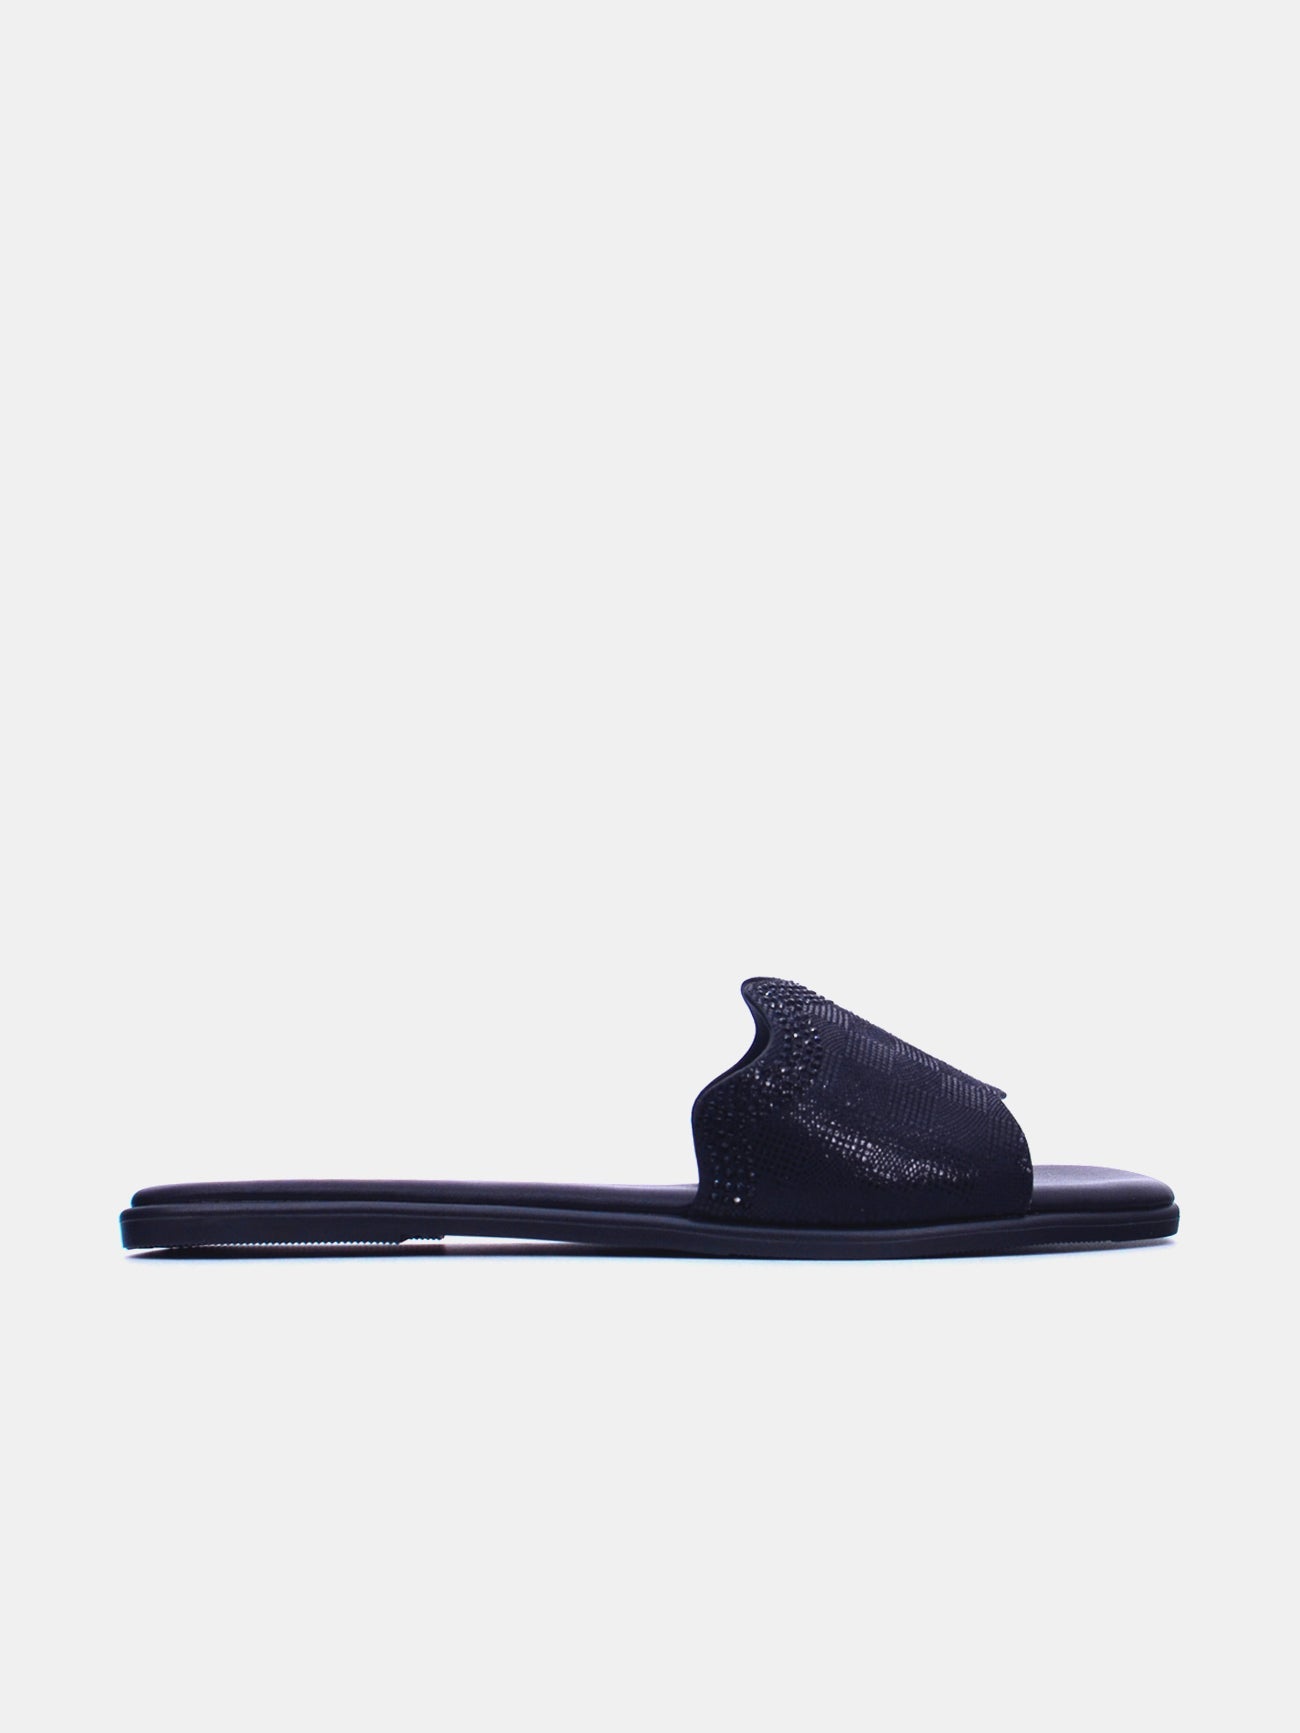 Michelle Morgan 114RC103 Women's Flat Sandals #color_Black